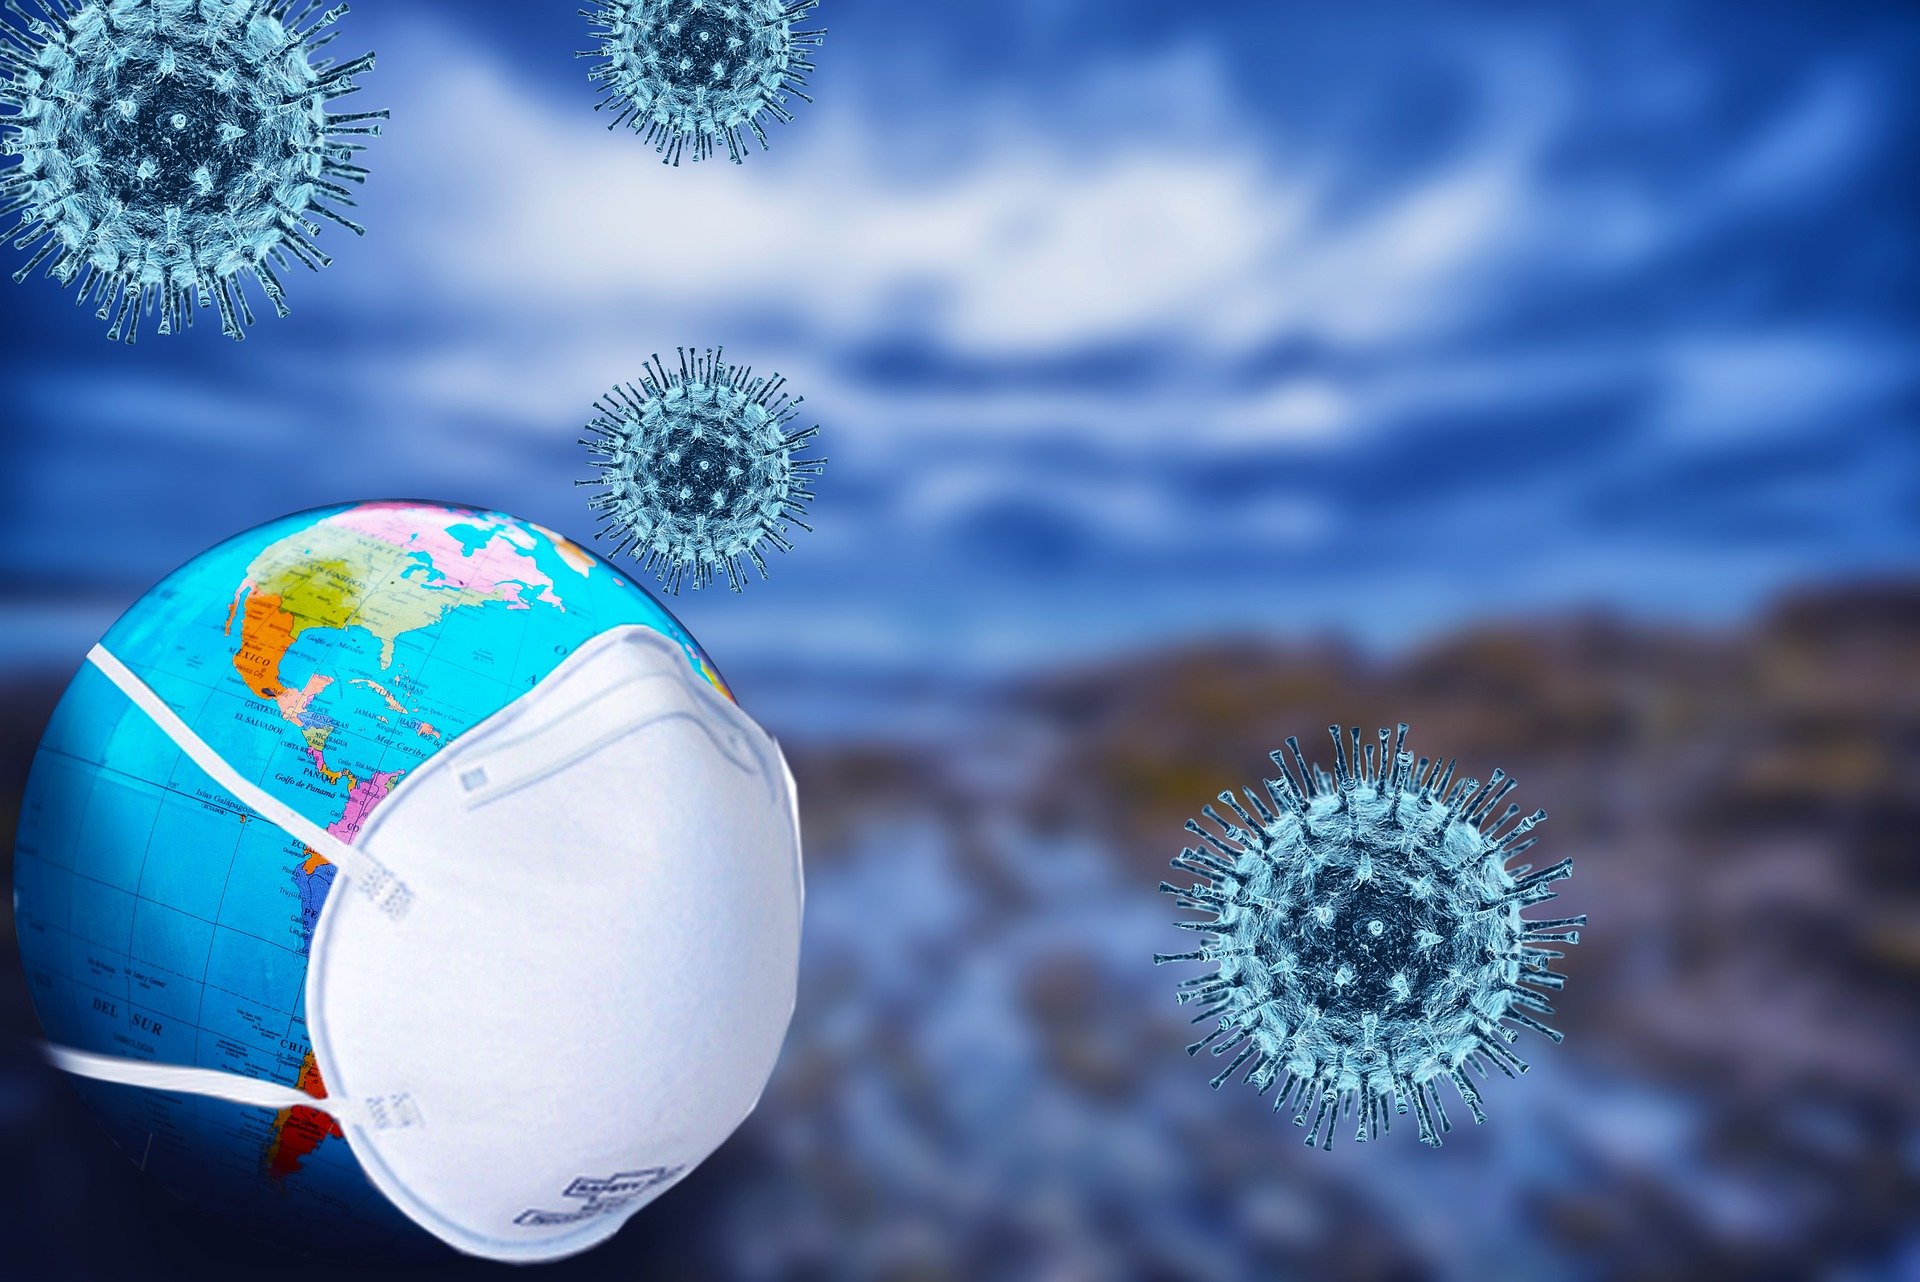 Une illustration pour encourager le port de masques dans le contexte de la pandémie de coronavirus. | Photo : Pixabay.